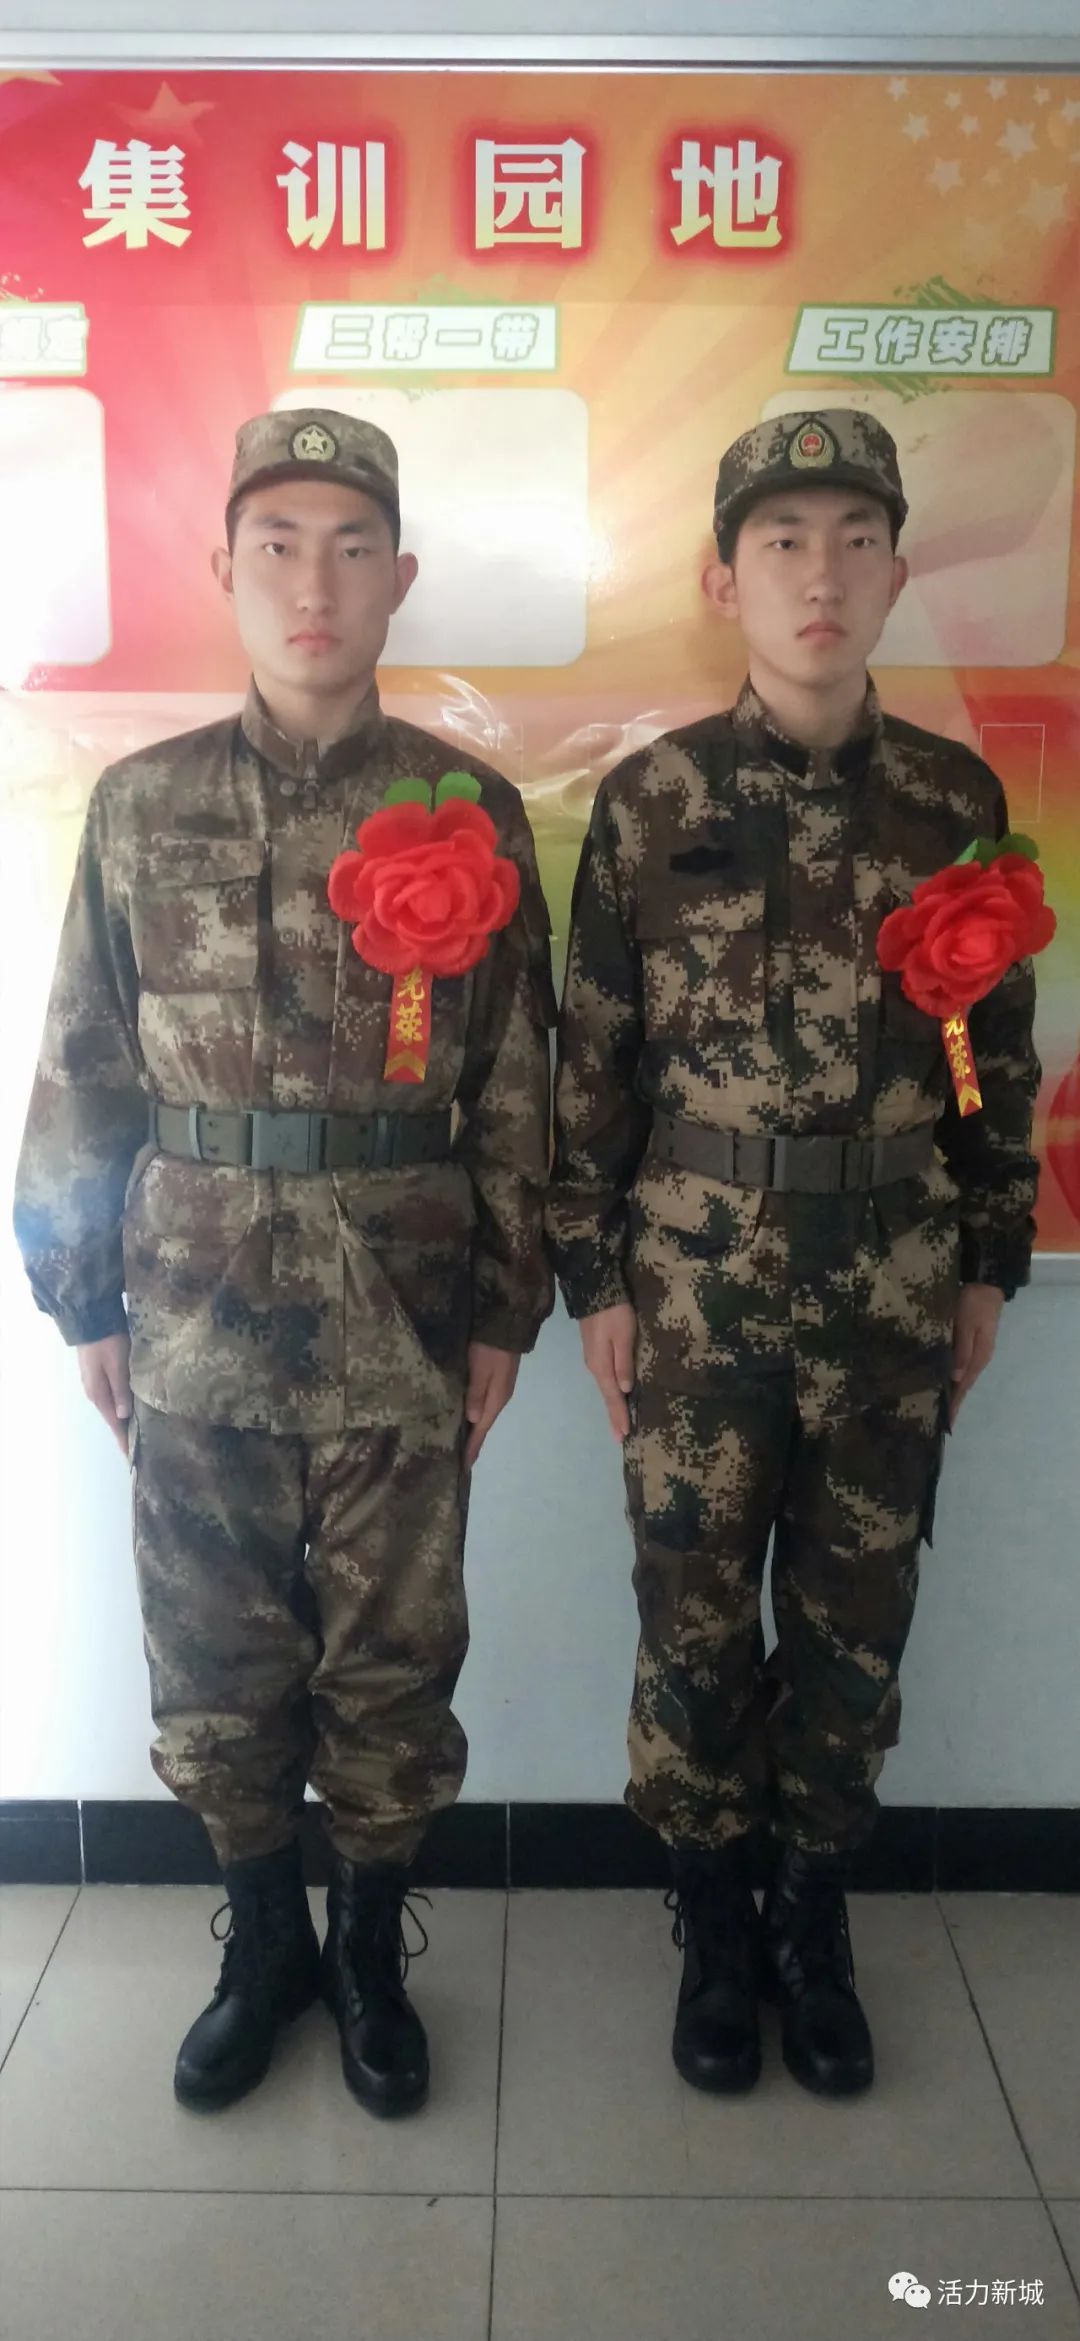 【新城新闻】双胞胎同入伍 退伍兵再参军